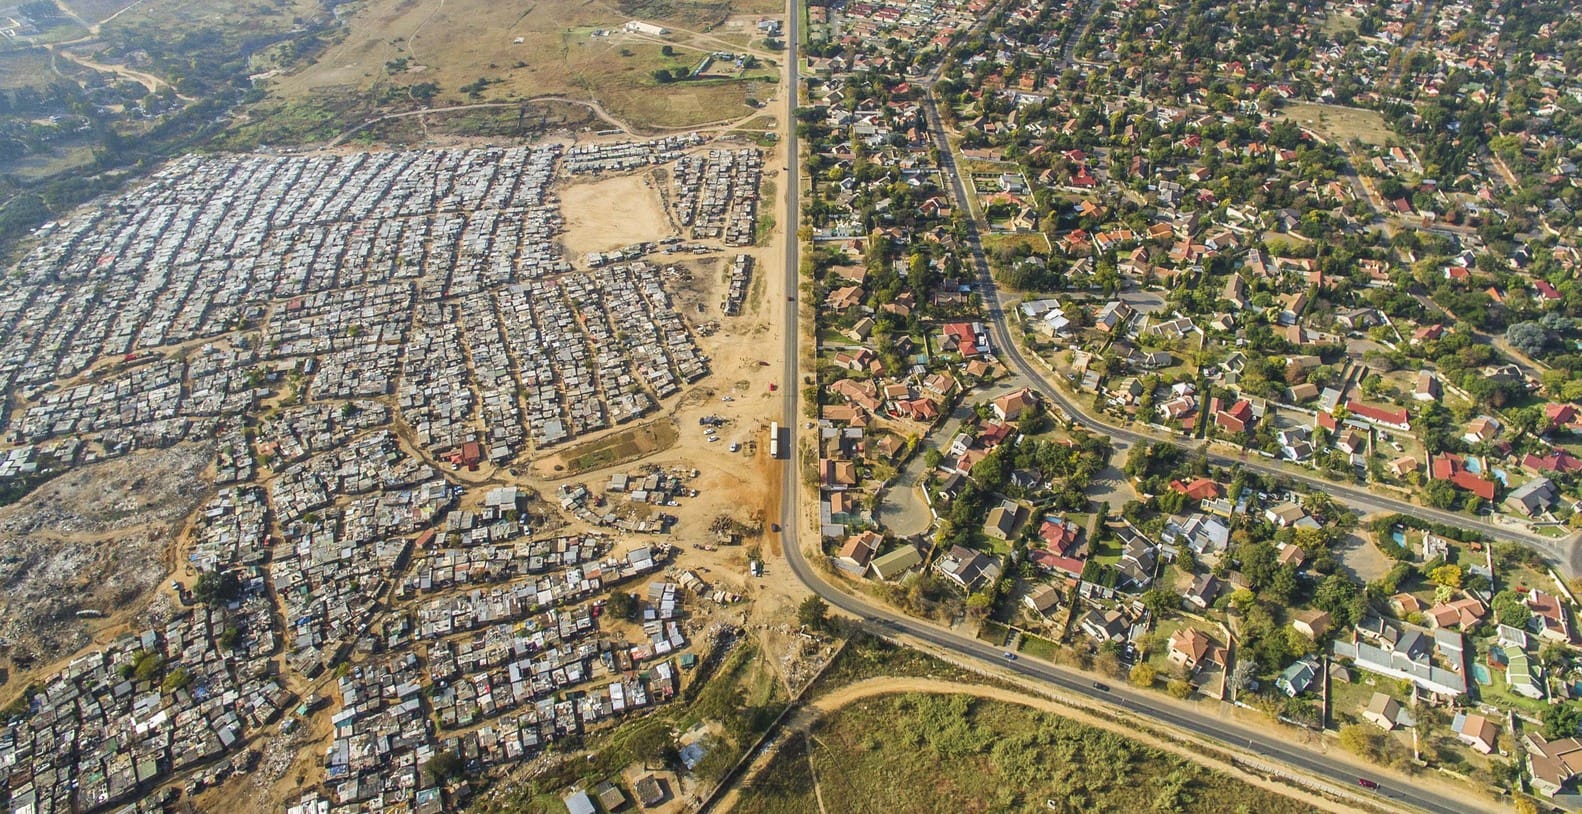 Assentamento Kia Sands em Joanesburgo, África do Sul. Foto: Johnny Muller / Unequal Scenes.